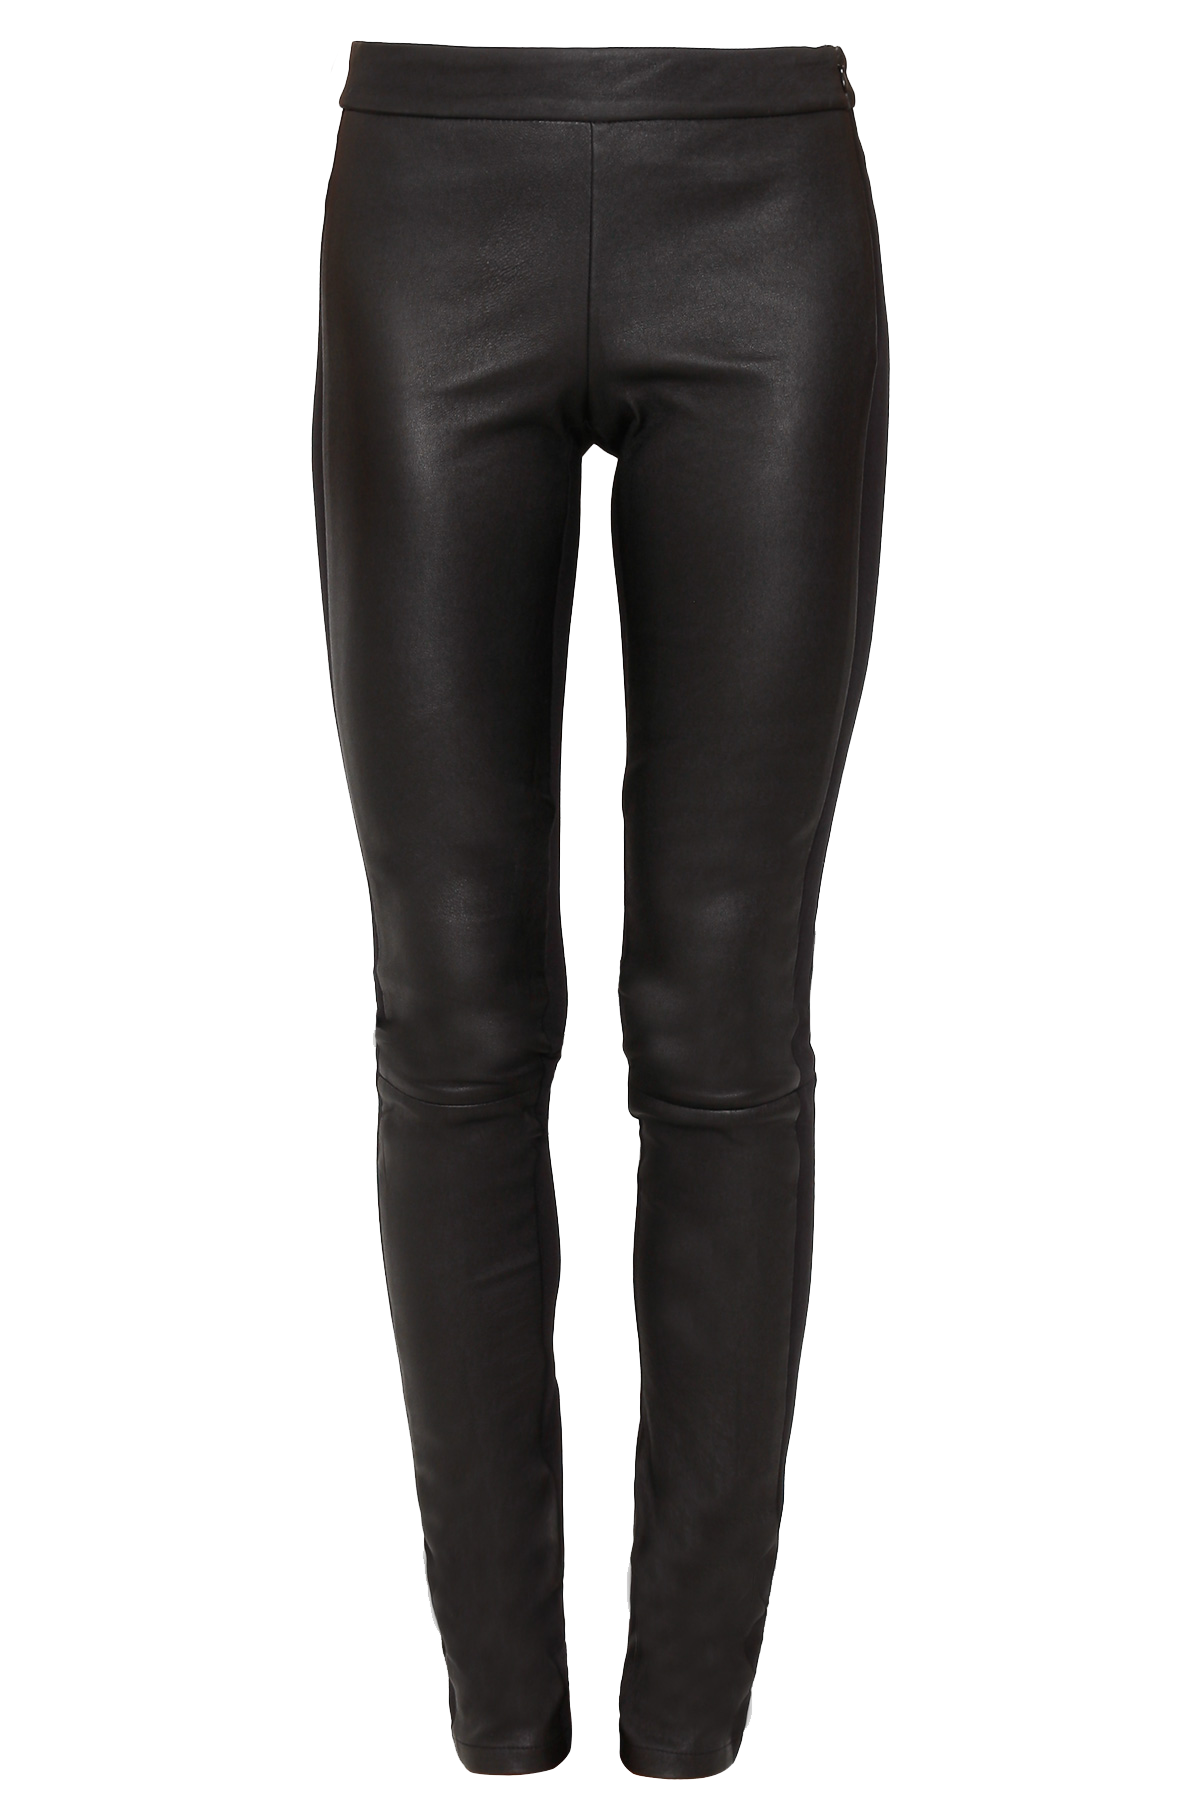 10 Crosby Derek Lam black leather front leggings